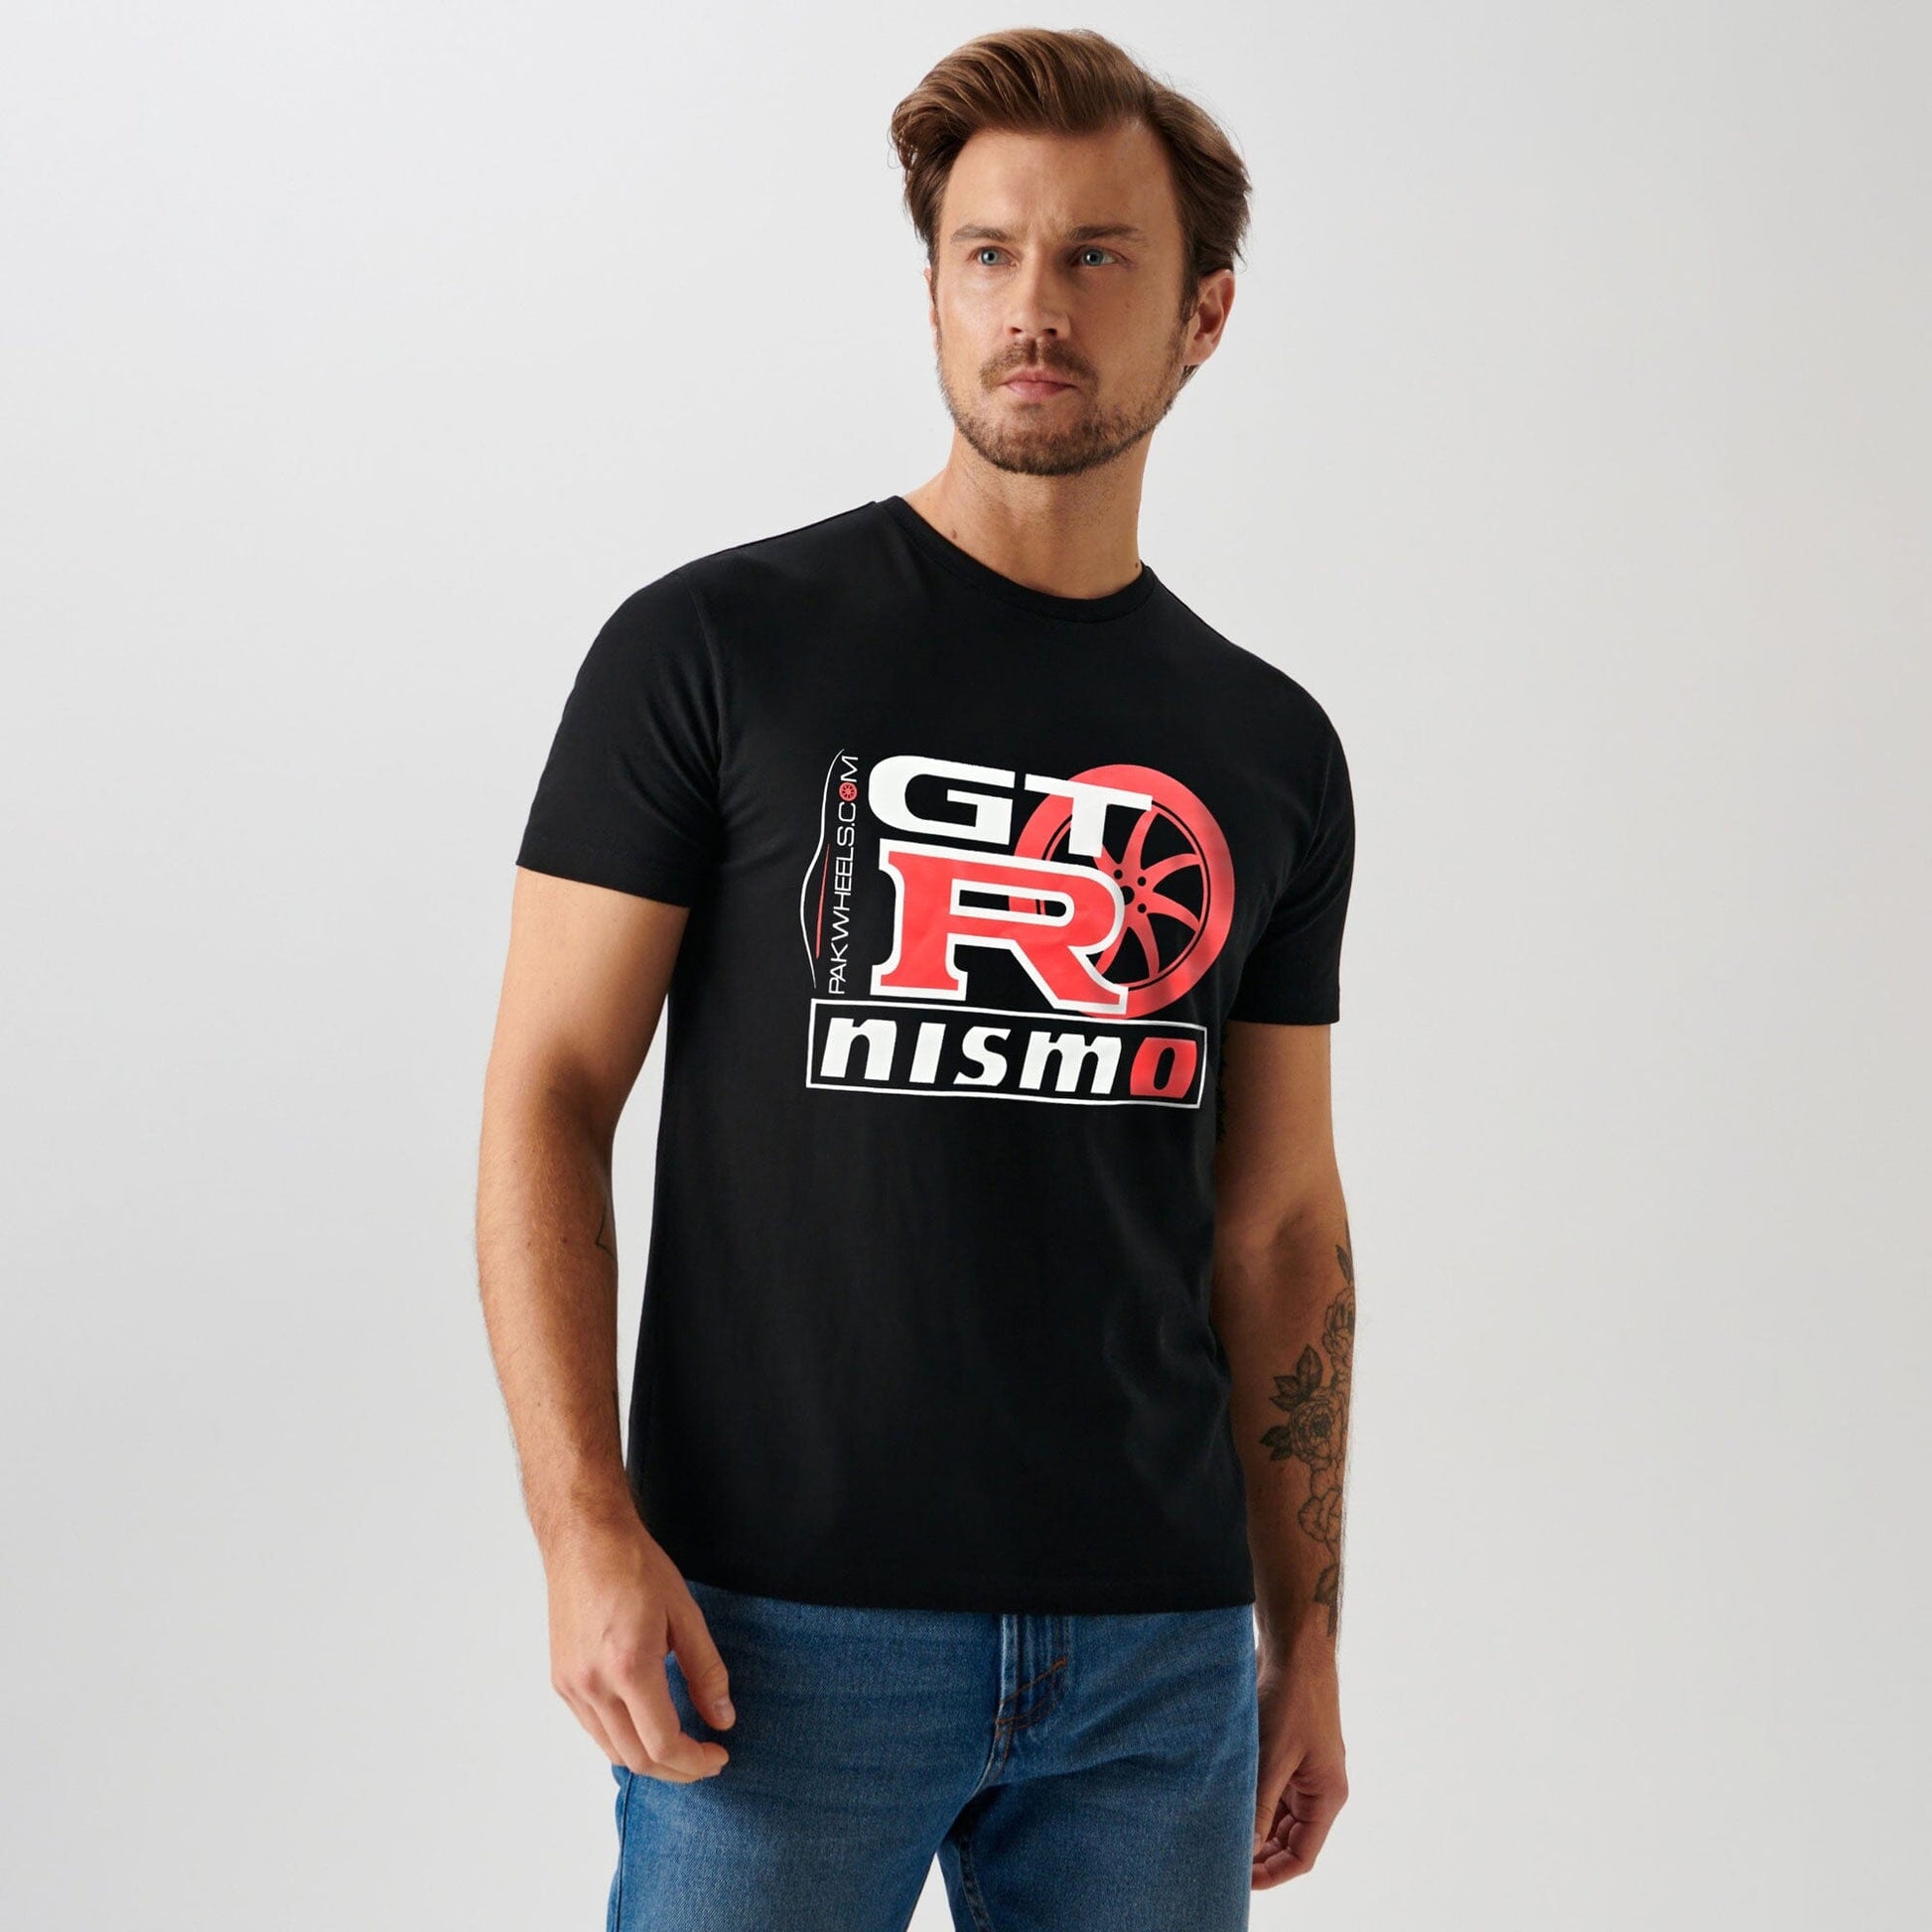 Polo Republica Men's GTR NISMO Printed Short Sleeve Tee Shirt